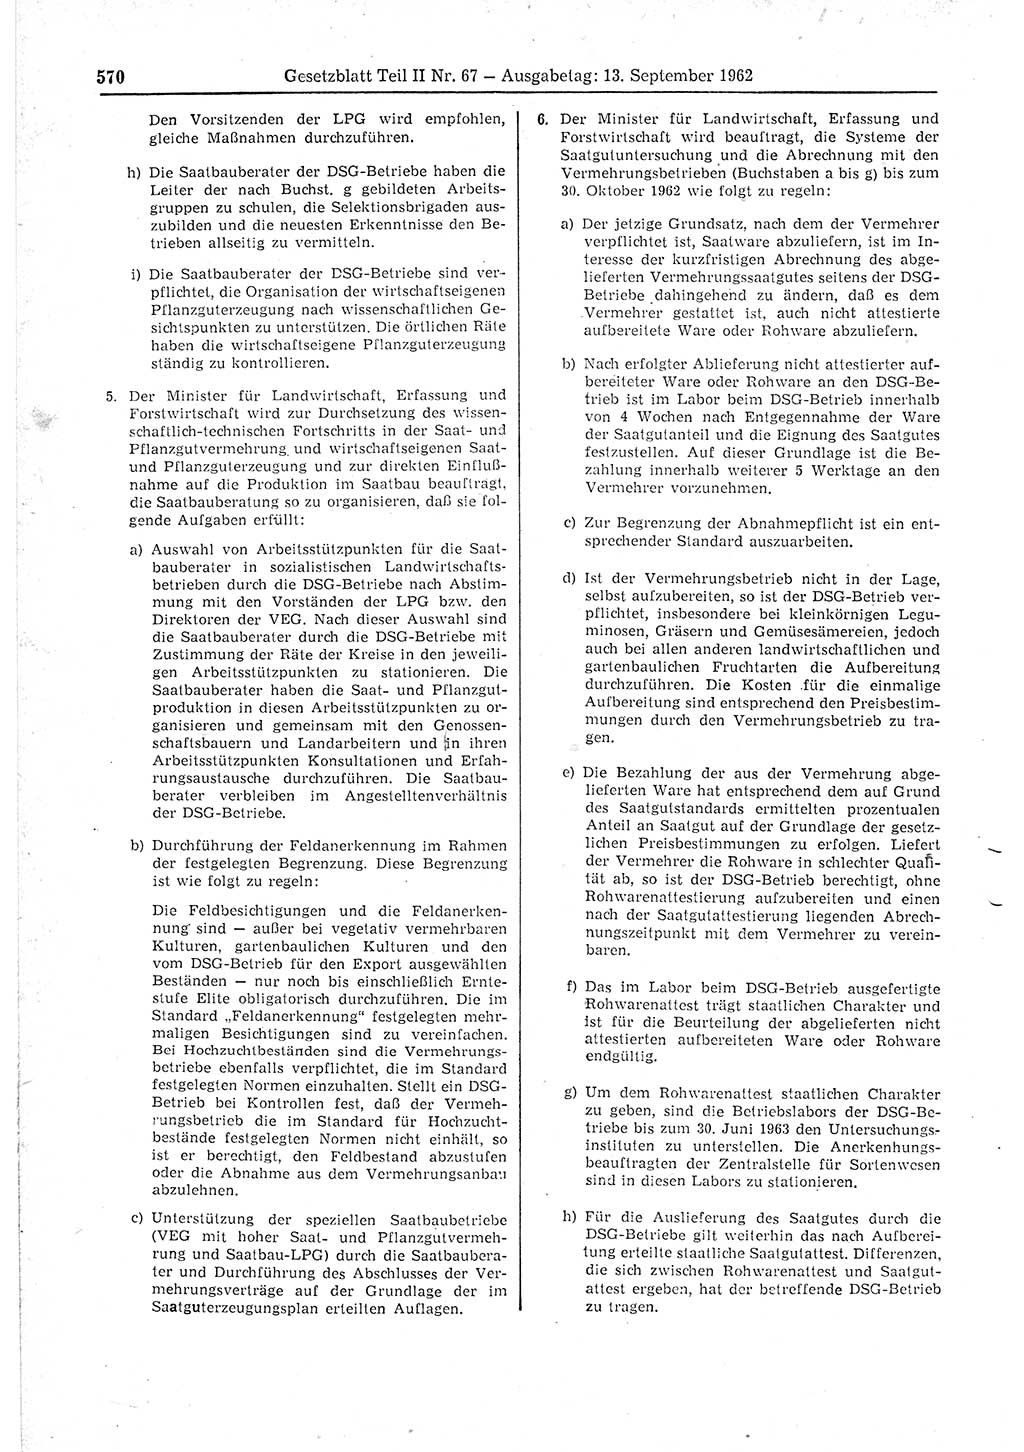 Gesetzblatt (GBl.) der Deutschen Demokratischen Republik (DDR) Teil ⅠⅠ 1962, Seite 570 (GBl. DDR ⅠⅠ 1962, S. 570)